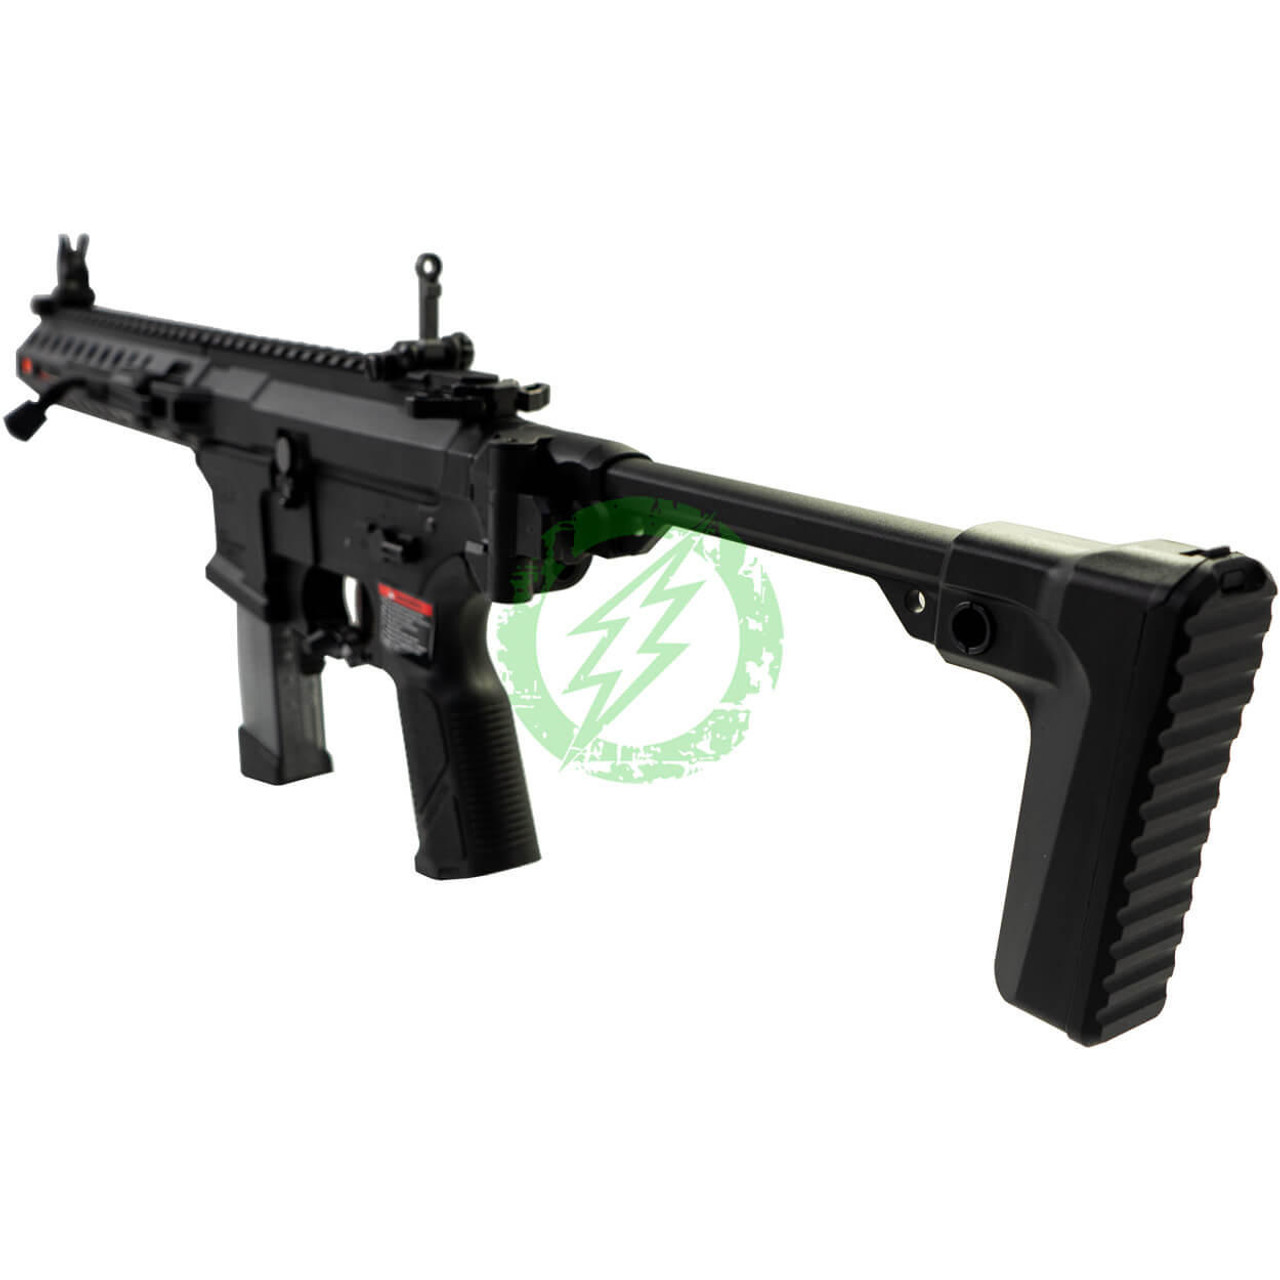  G&G FAR 9 Rapid Folding PCC Airsoft AEG Rifle 